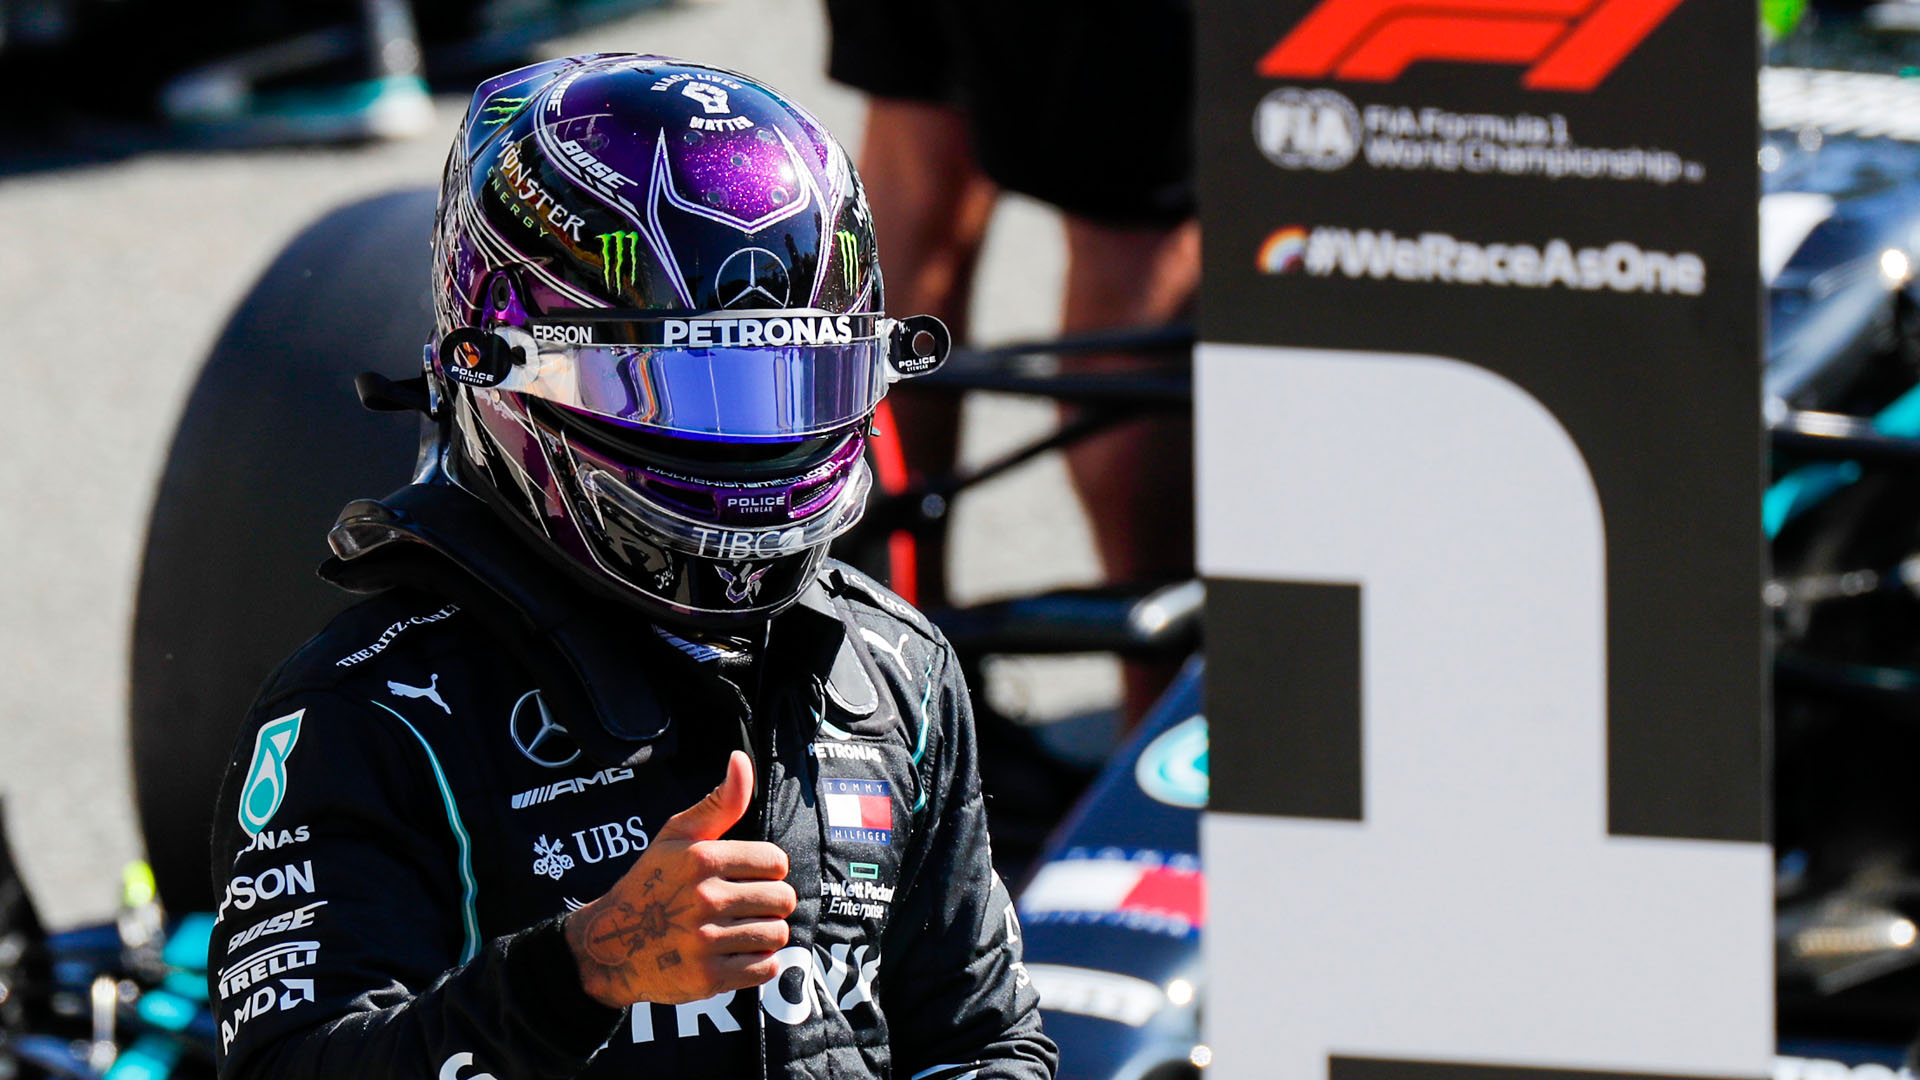 Hamilton consigue la pole en el “juego” de los rebufos del Gran Premio de Italia